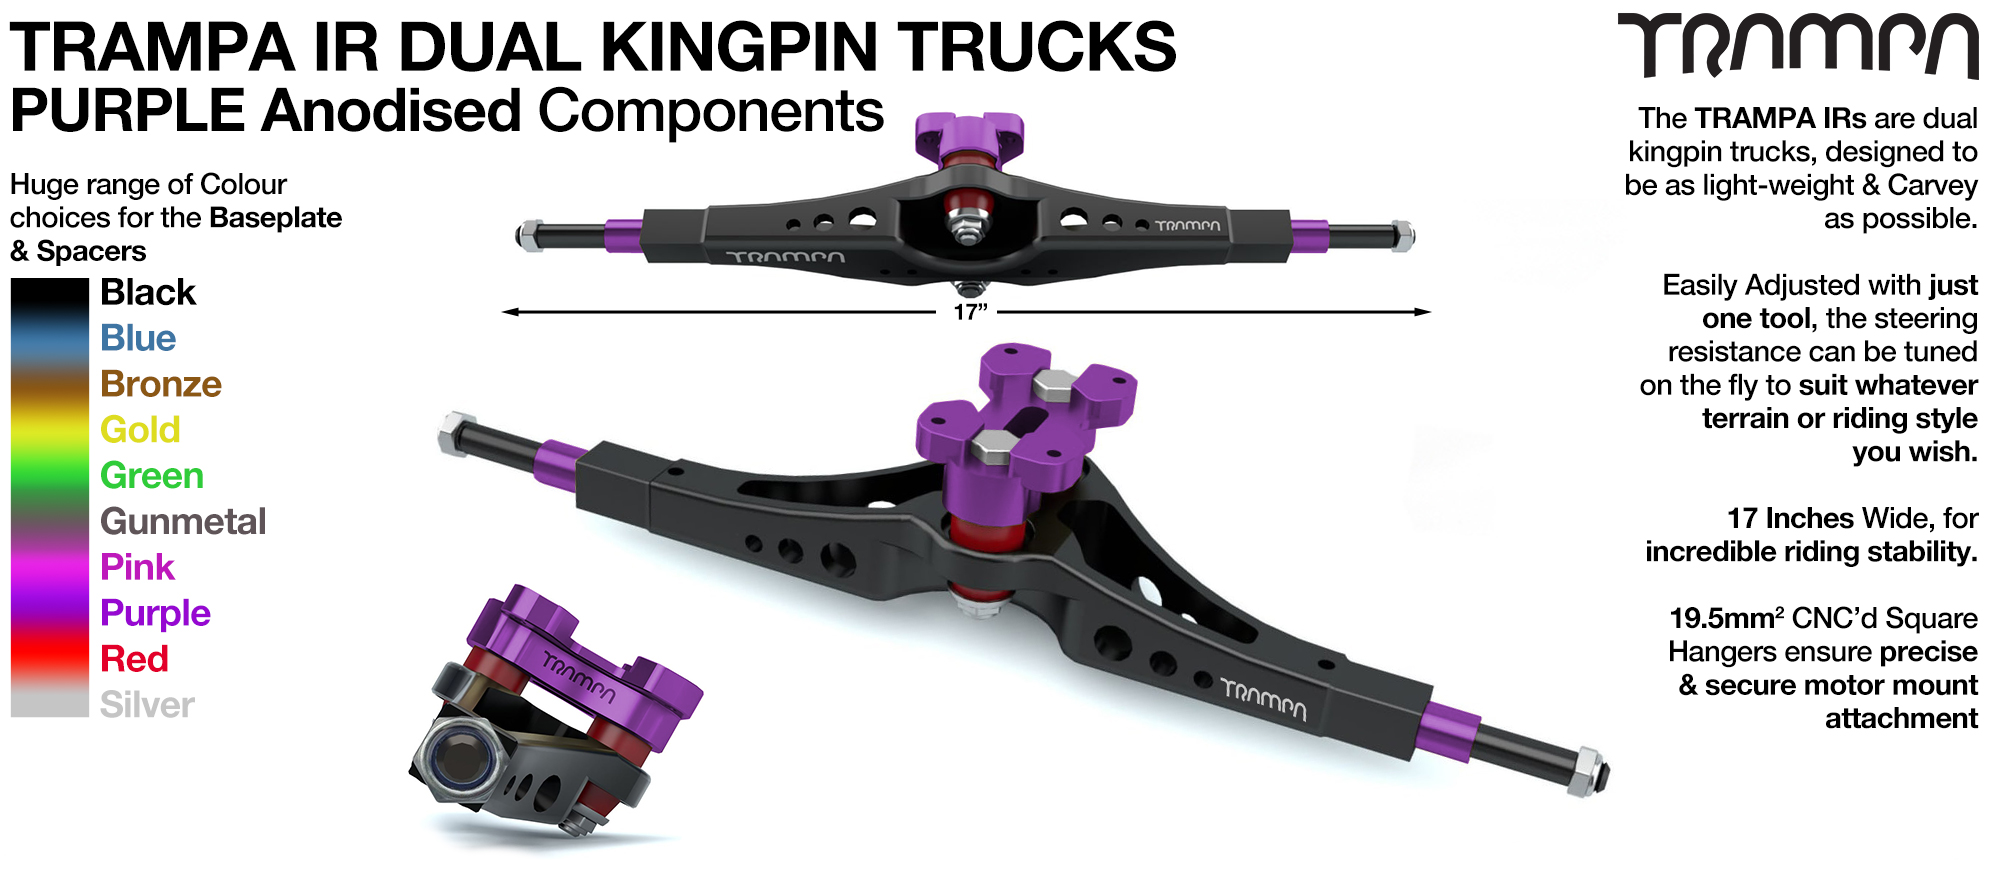 TRAMPA IR Double Kingpinned Skate Style Trucks fit every 19.1mm Motor Mount TRAMPA offers - PURPLE